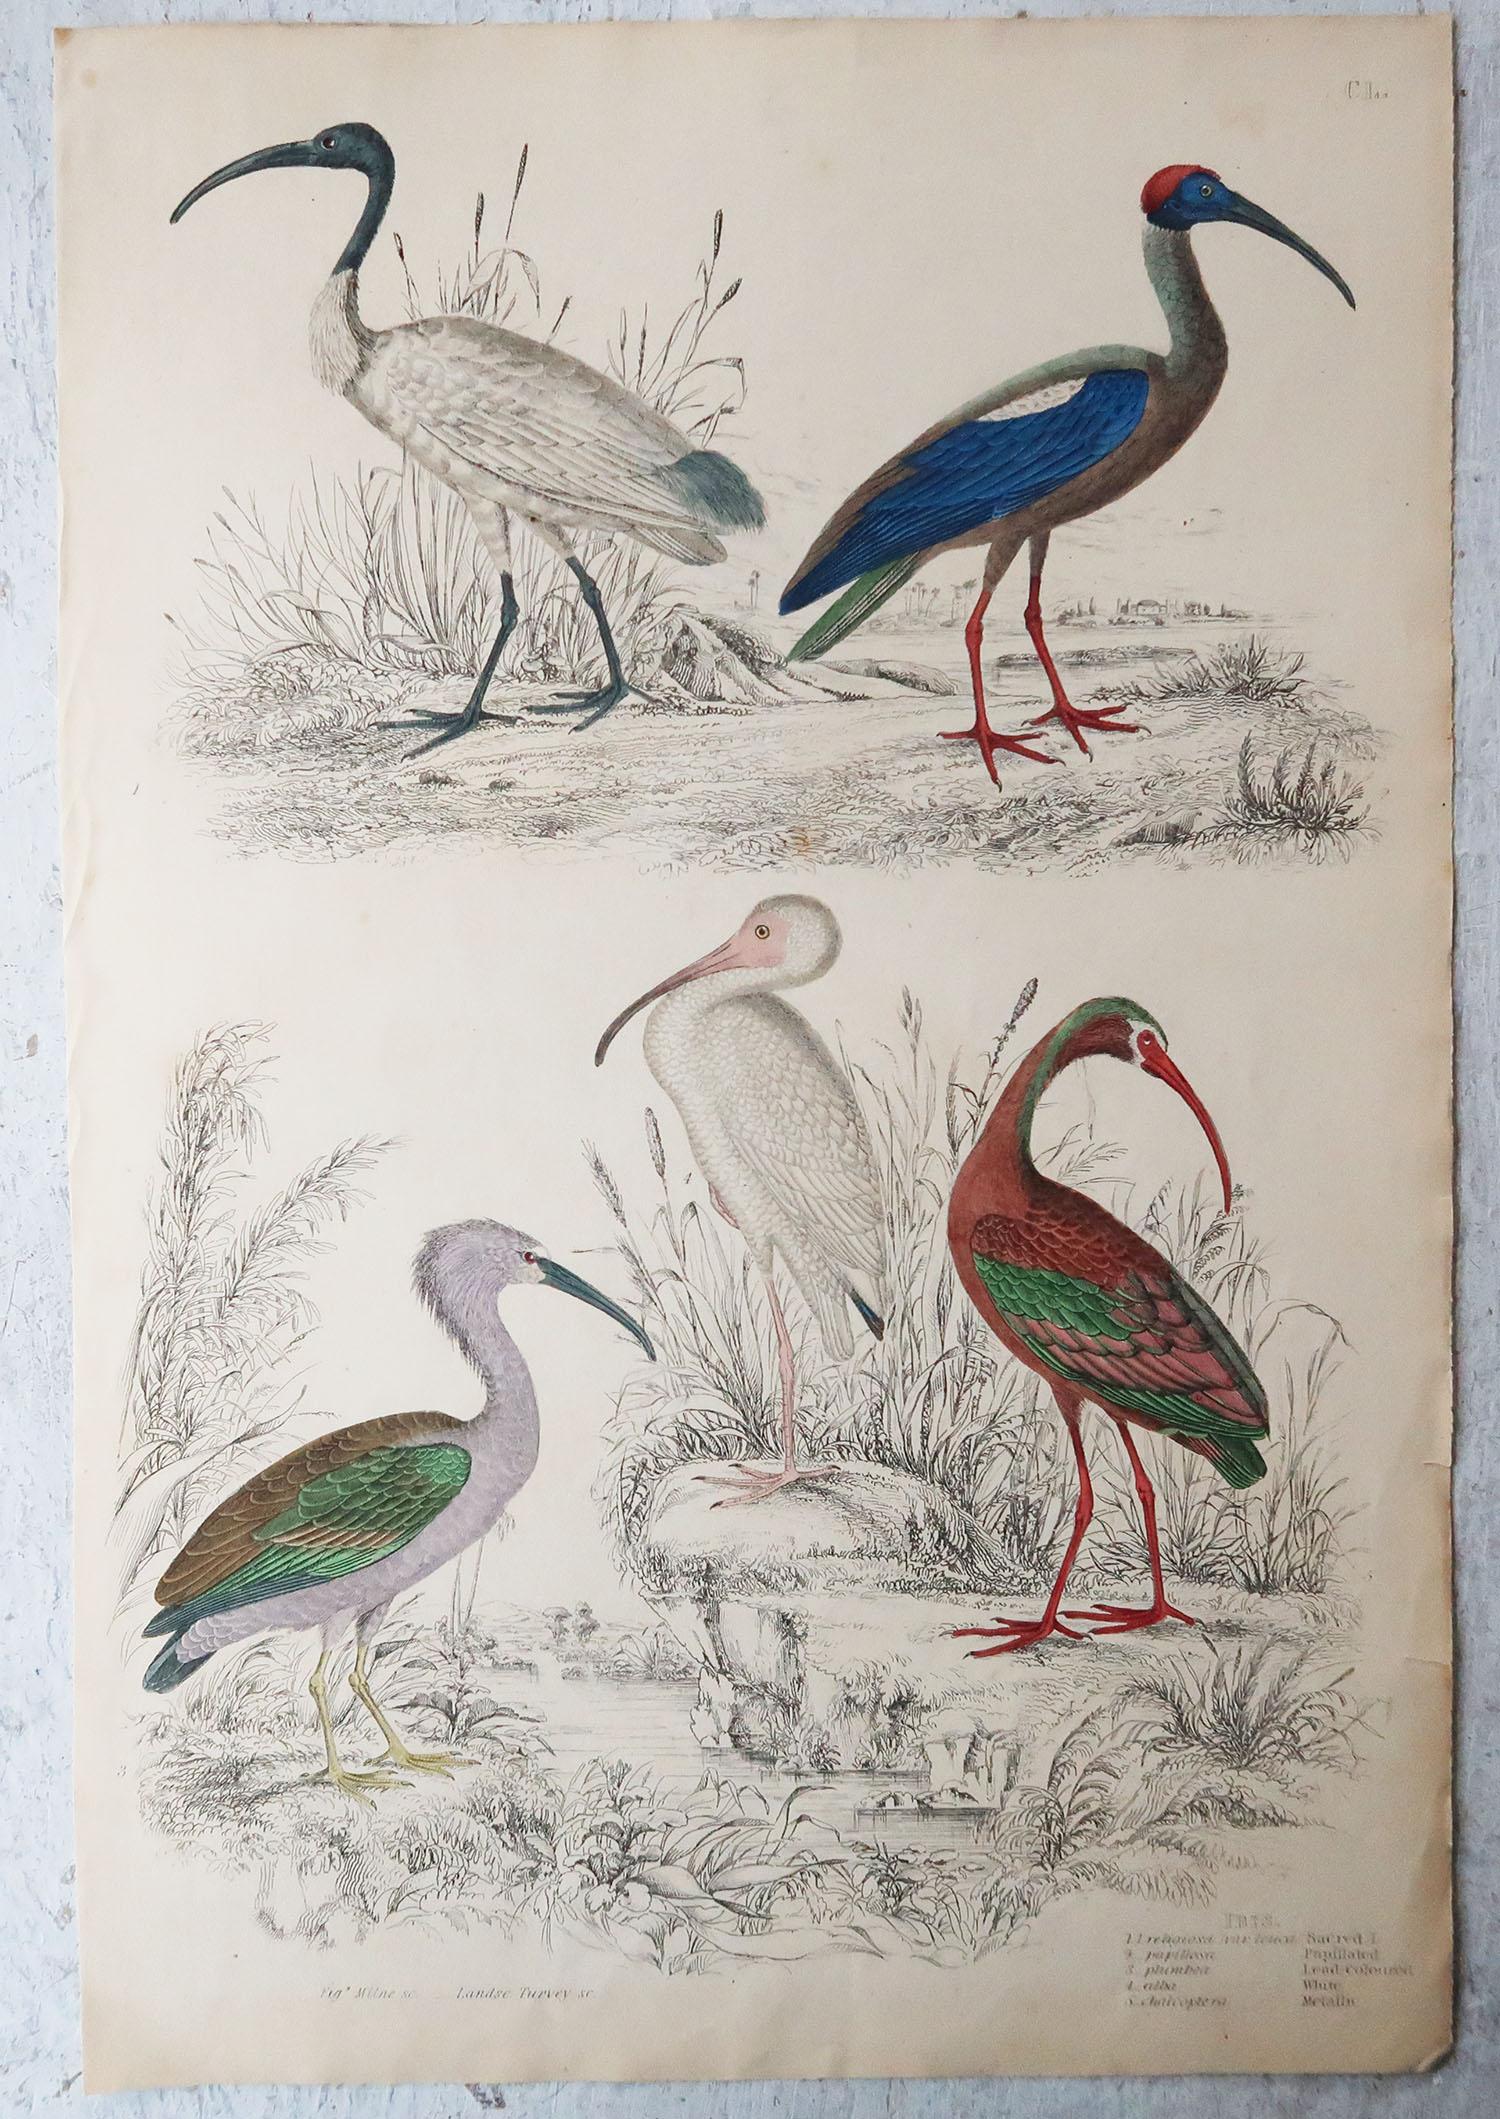 Folk Art Large Original Antique Natural History Print, Cranes, circa 1835